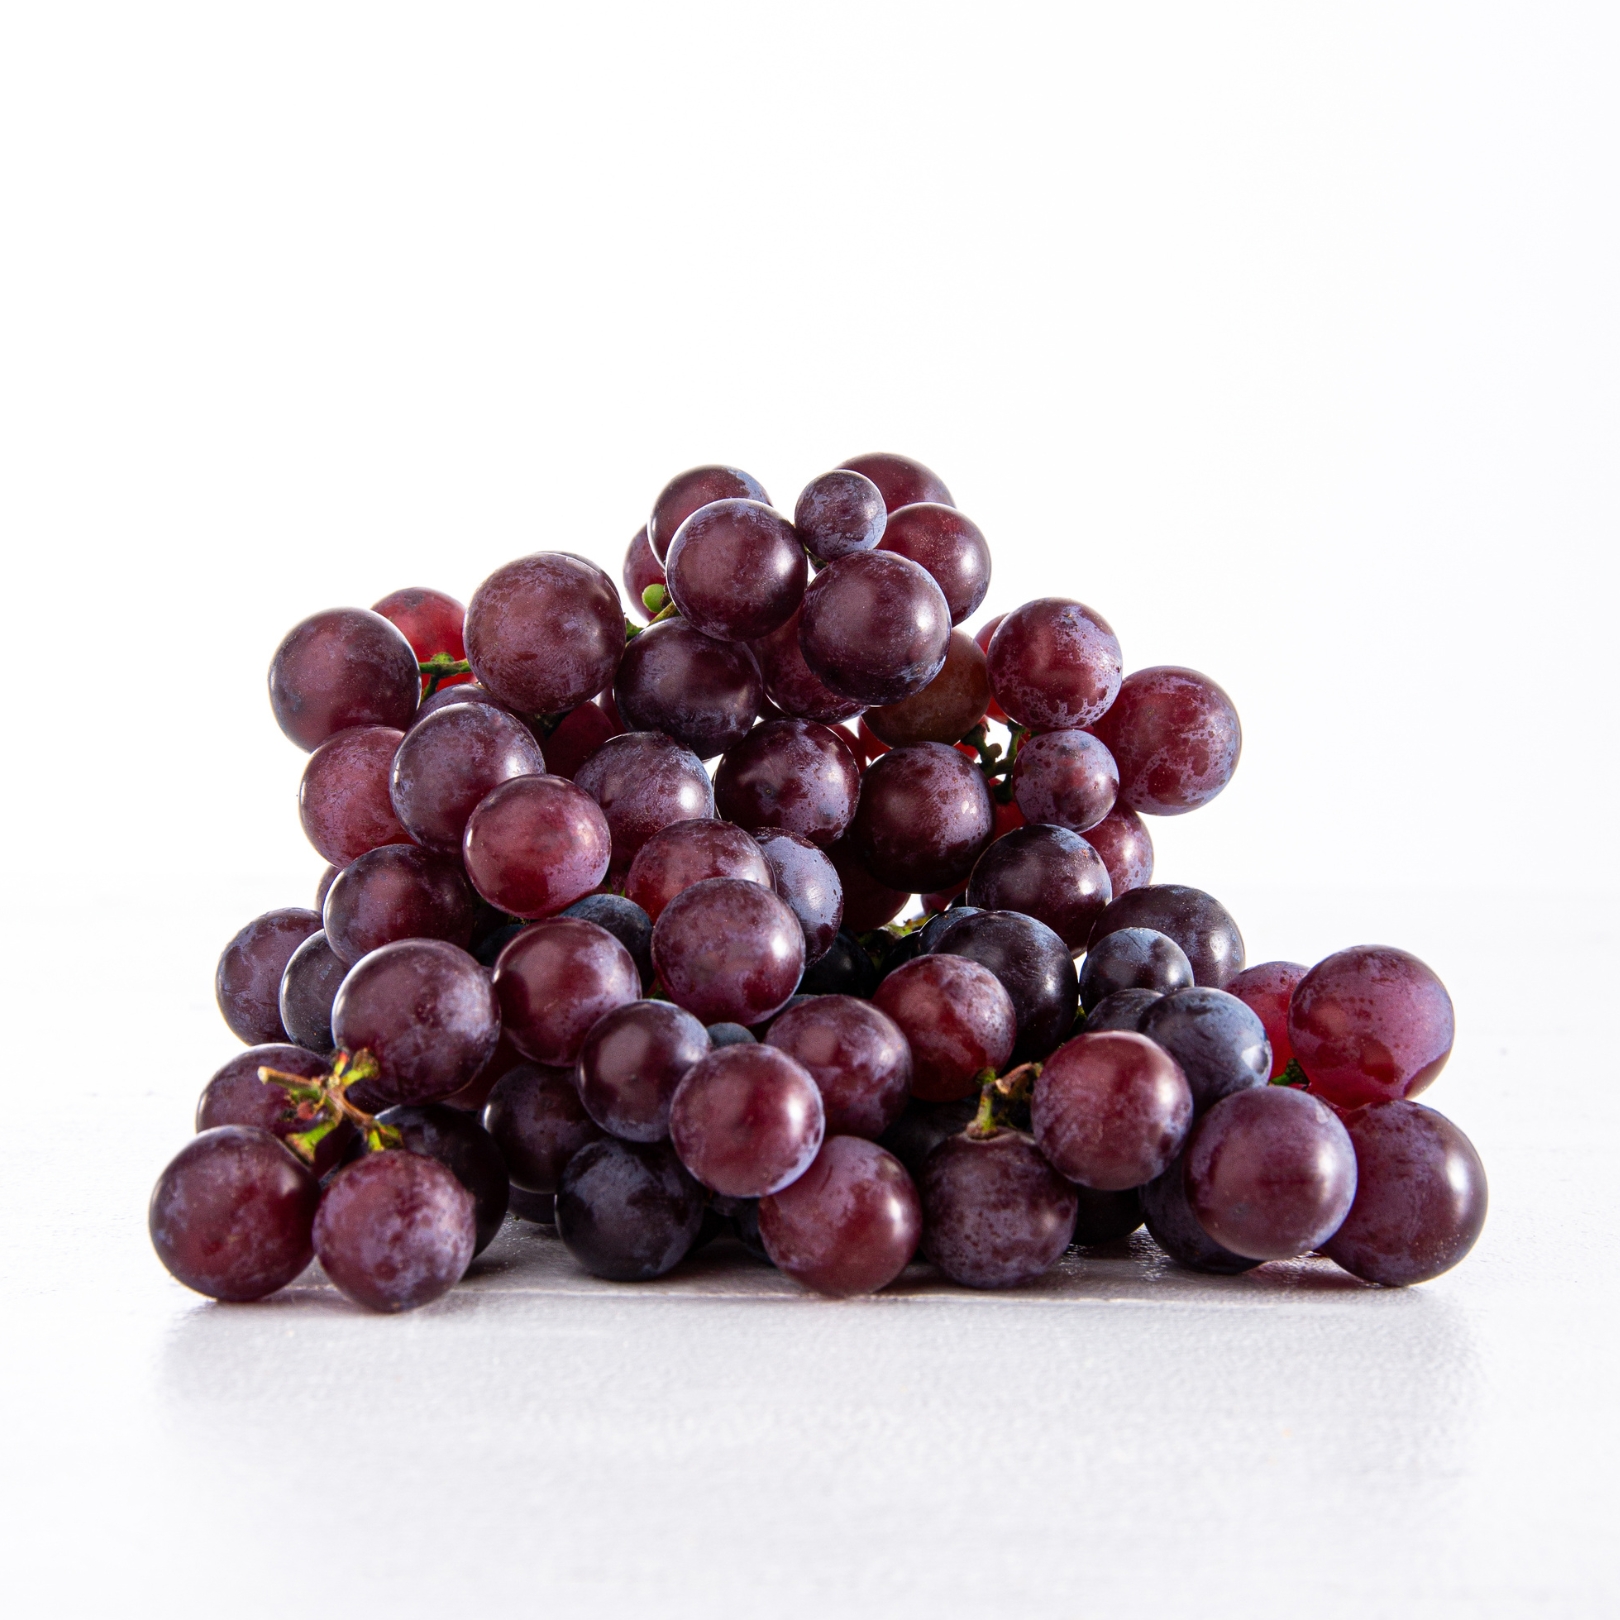 Buy Grapes - Steuben Online NZ